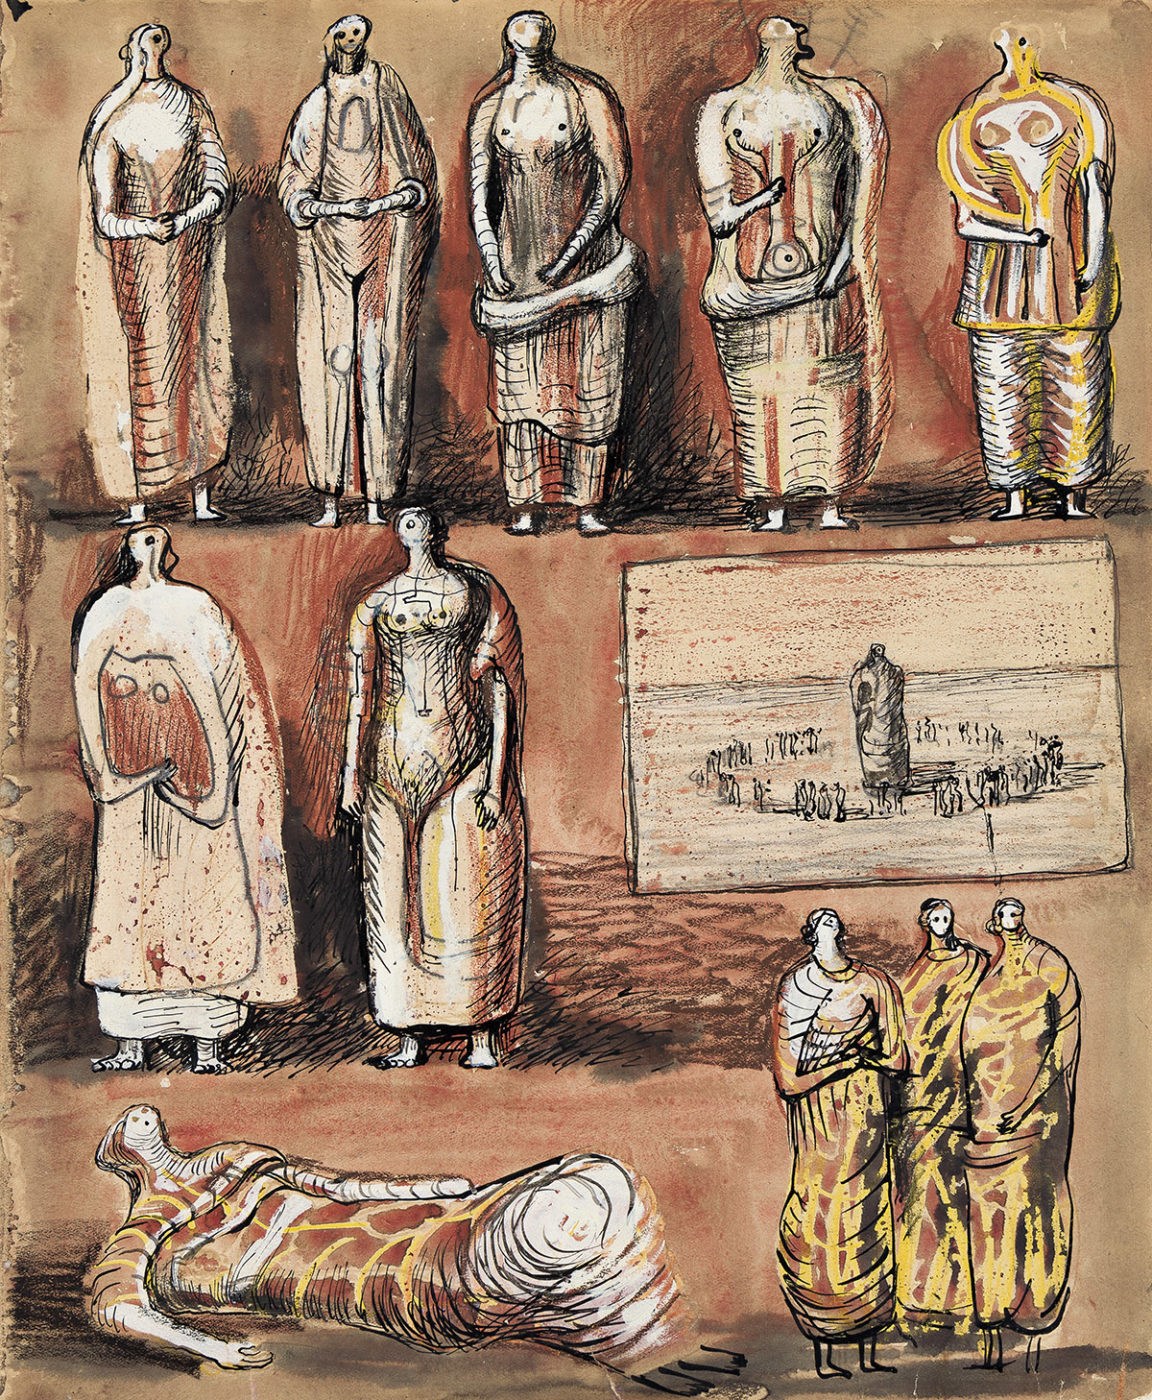 Henry Moore, OM CH (1898-1986), Figure Studies